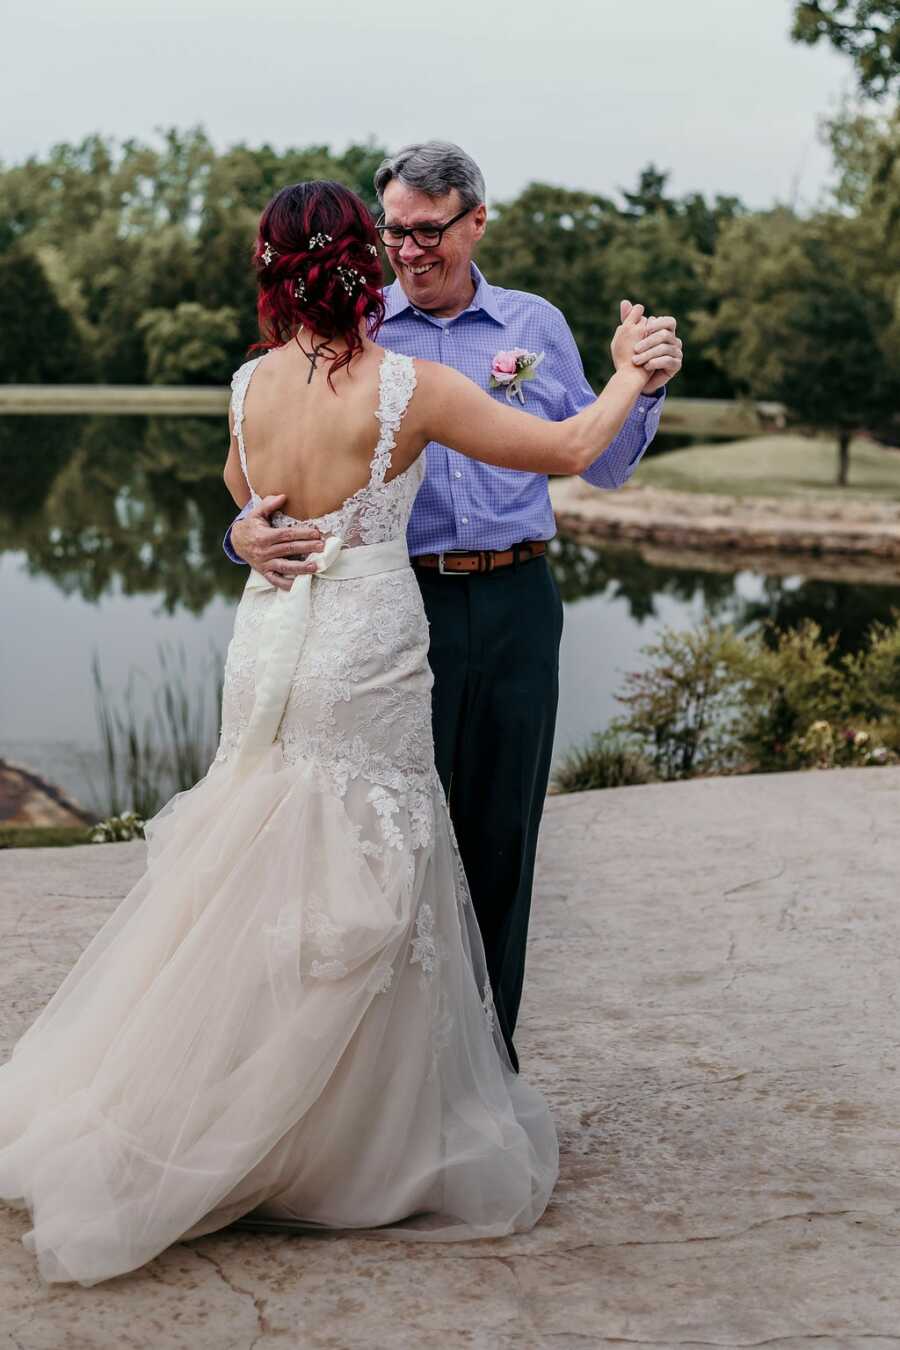 爸爸和女儿舞蹈